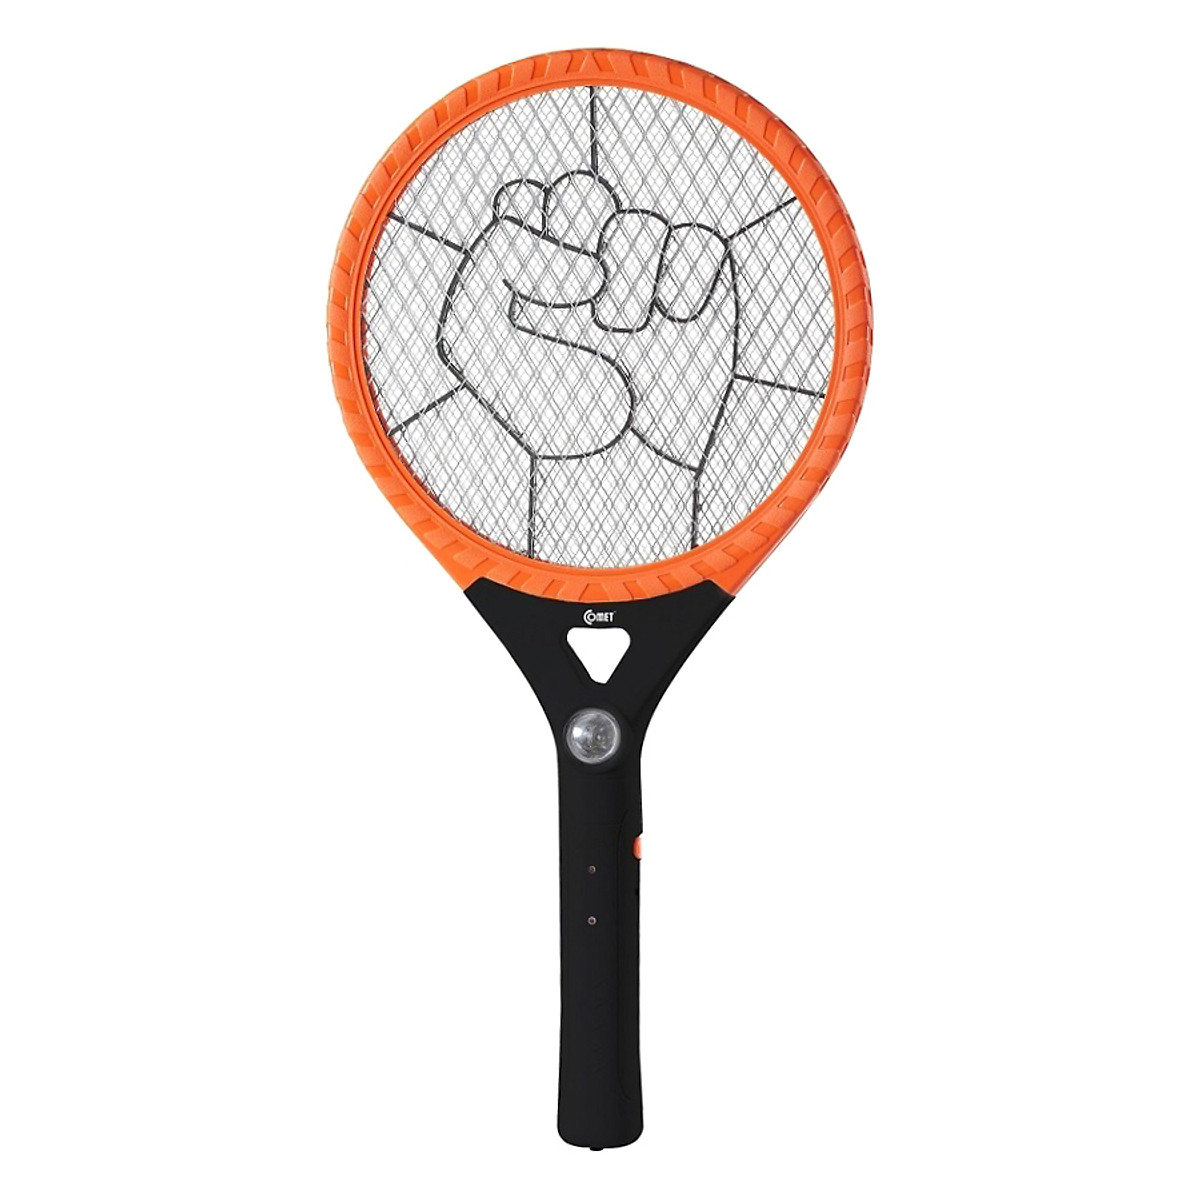 Sử dụng và bảo quản vợt bắt muỗi đúng cách